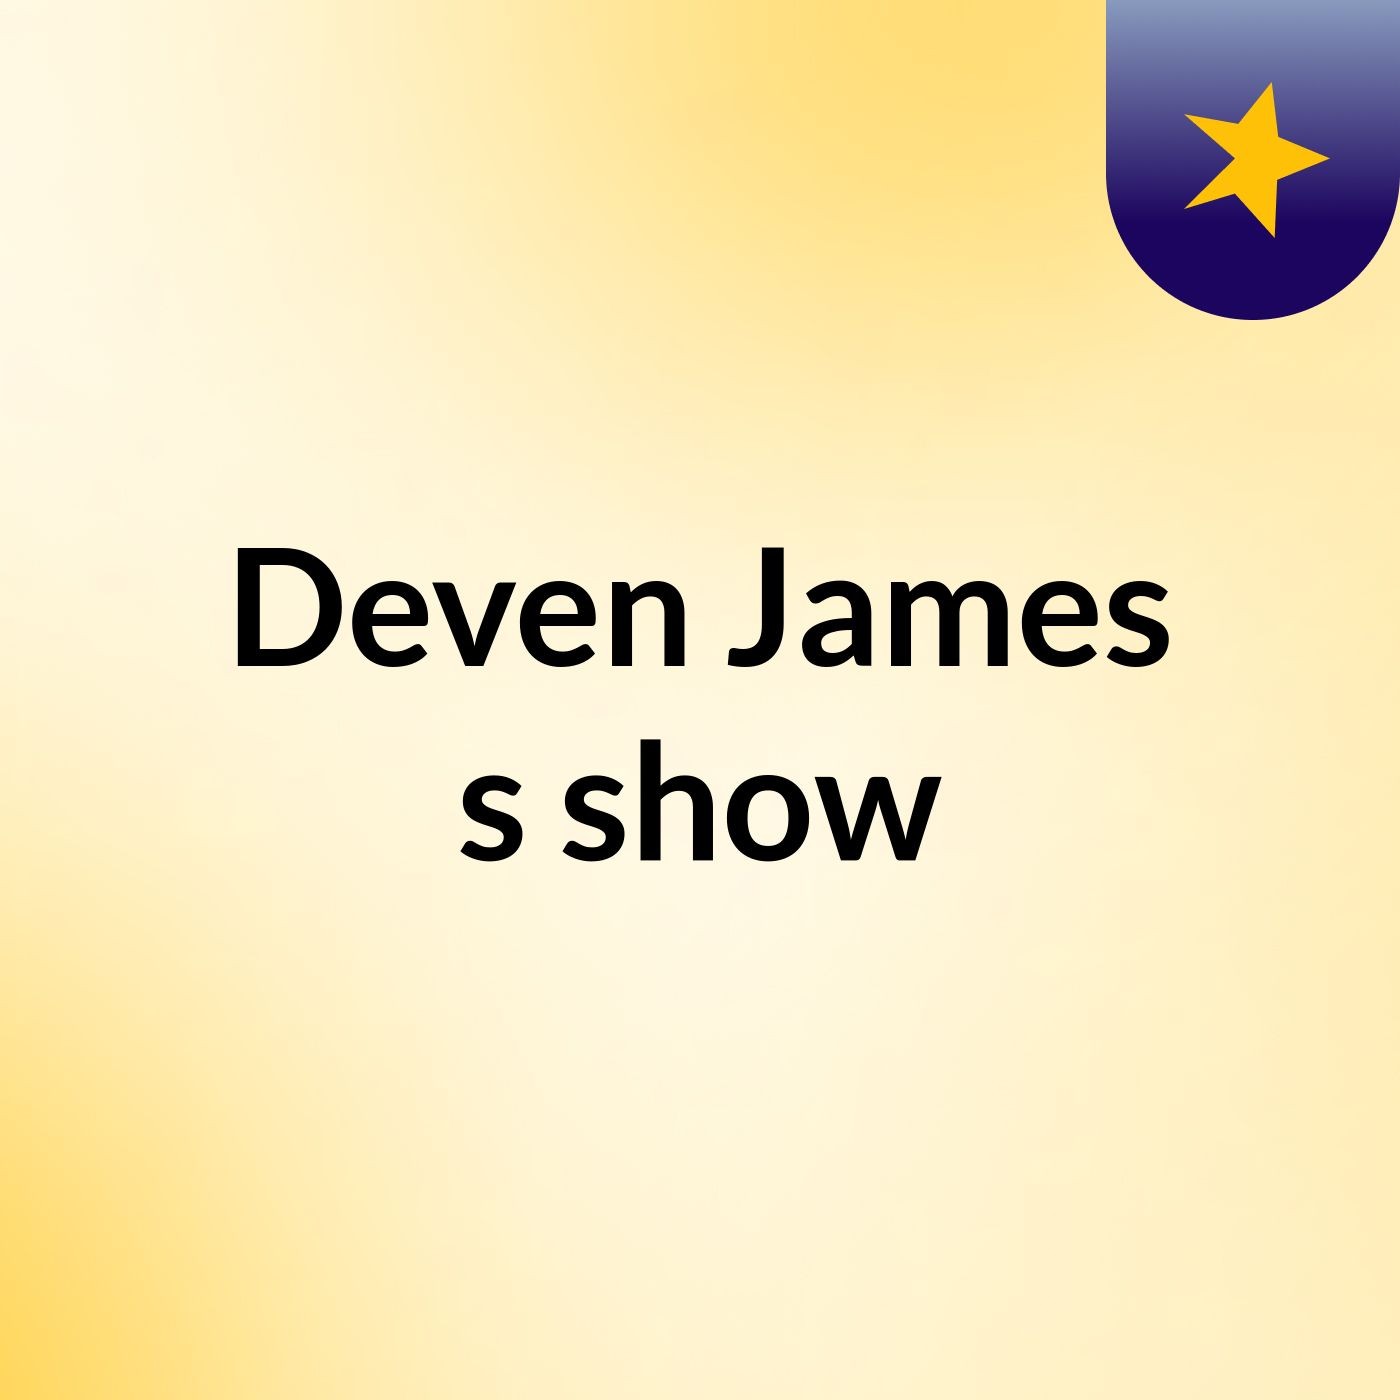 Deven James's show